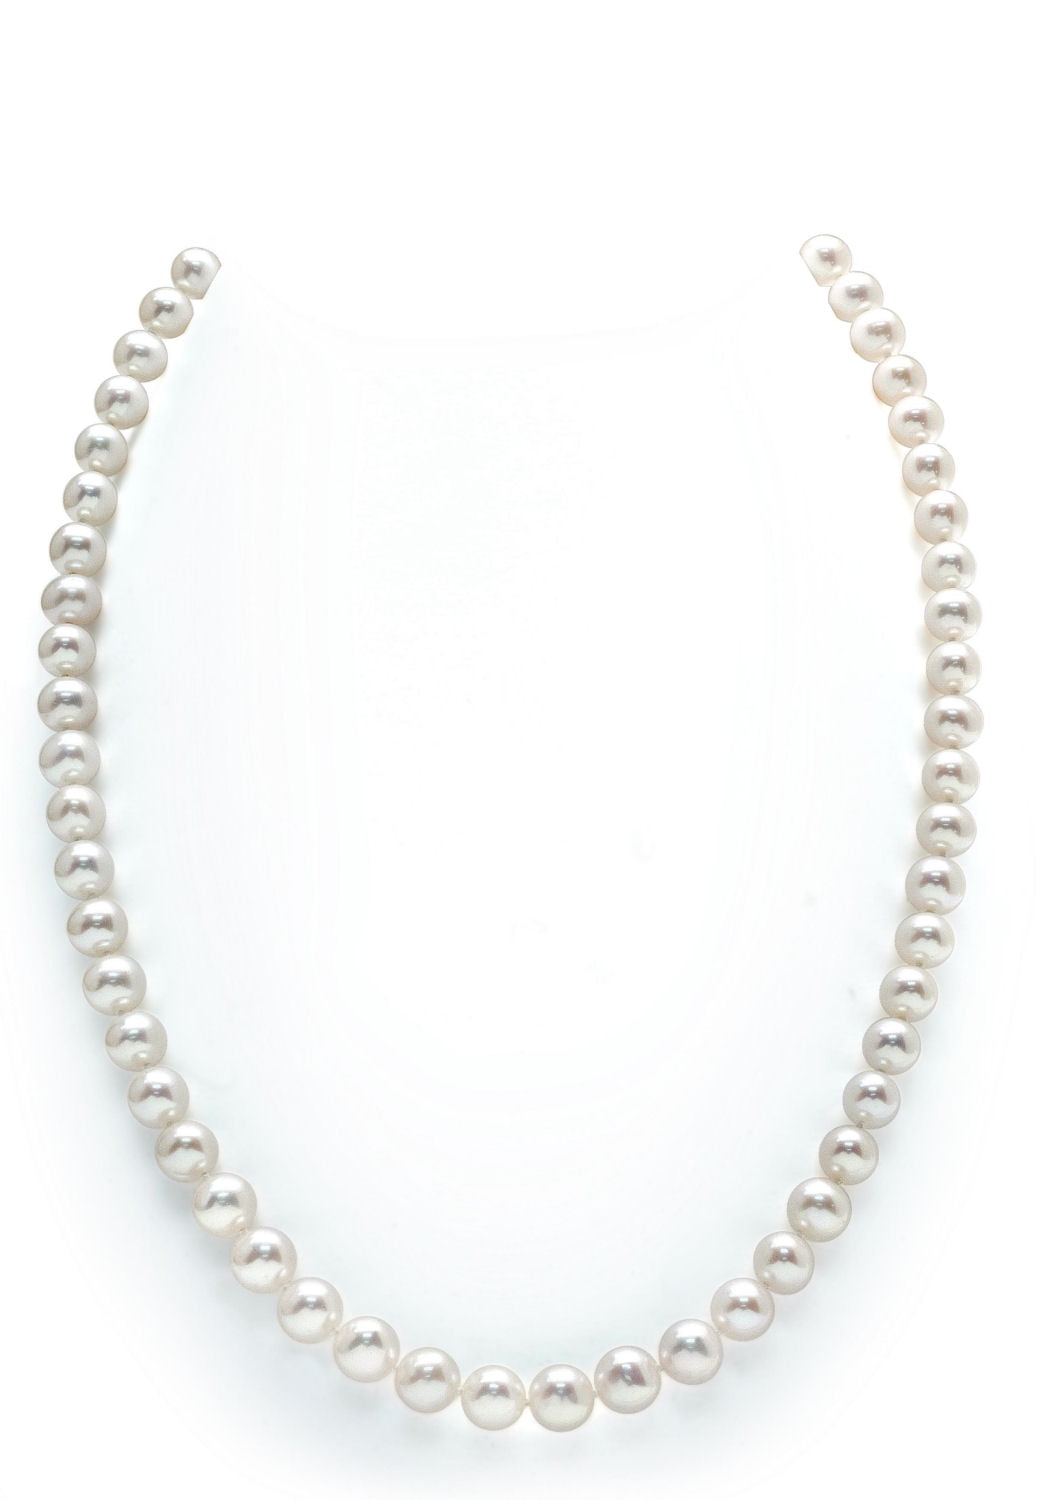 8mm AAA Dark Green Shell Pearl necklace Bracelet Earring Set